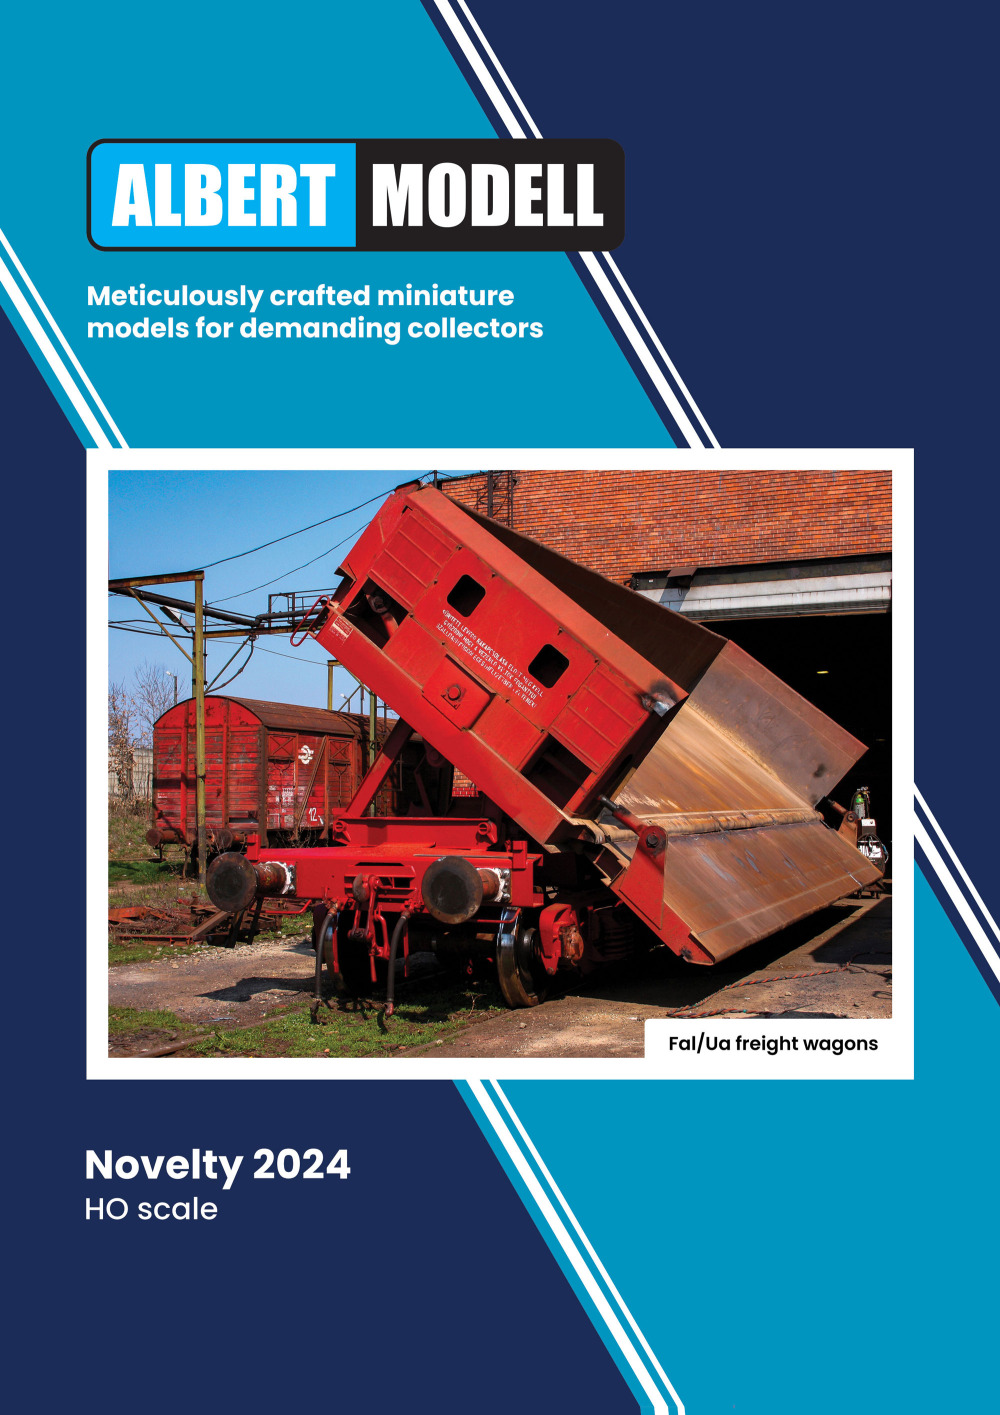 Albert Modell - Fal/Ua freight wagons